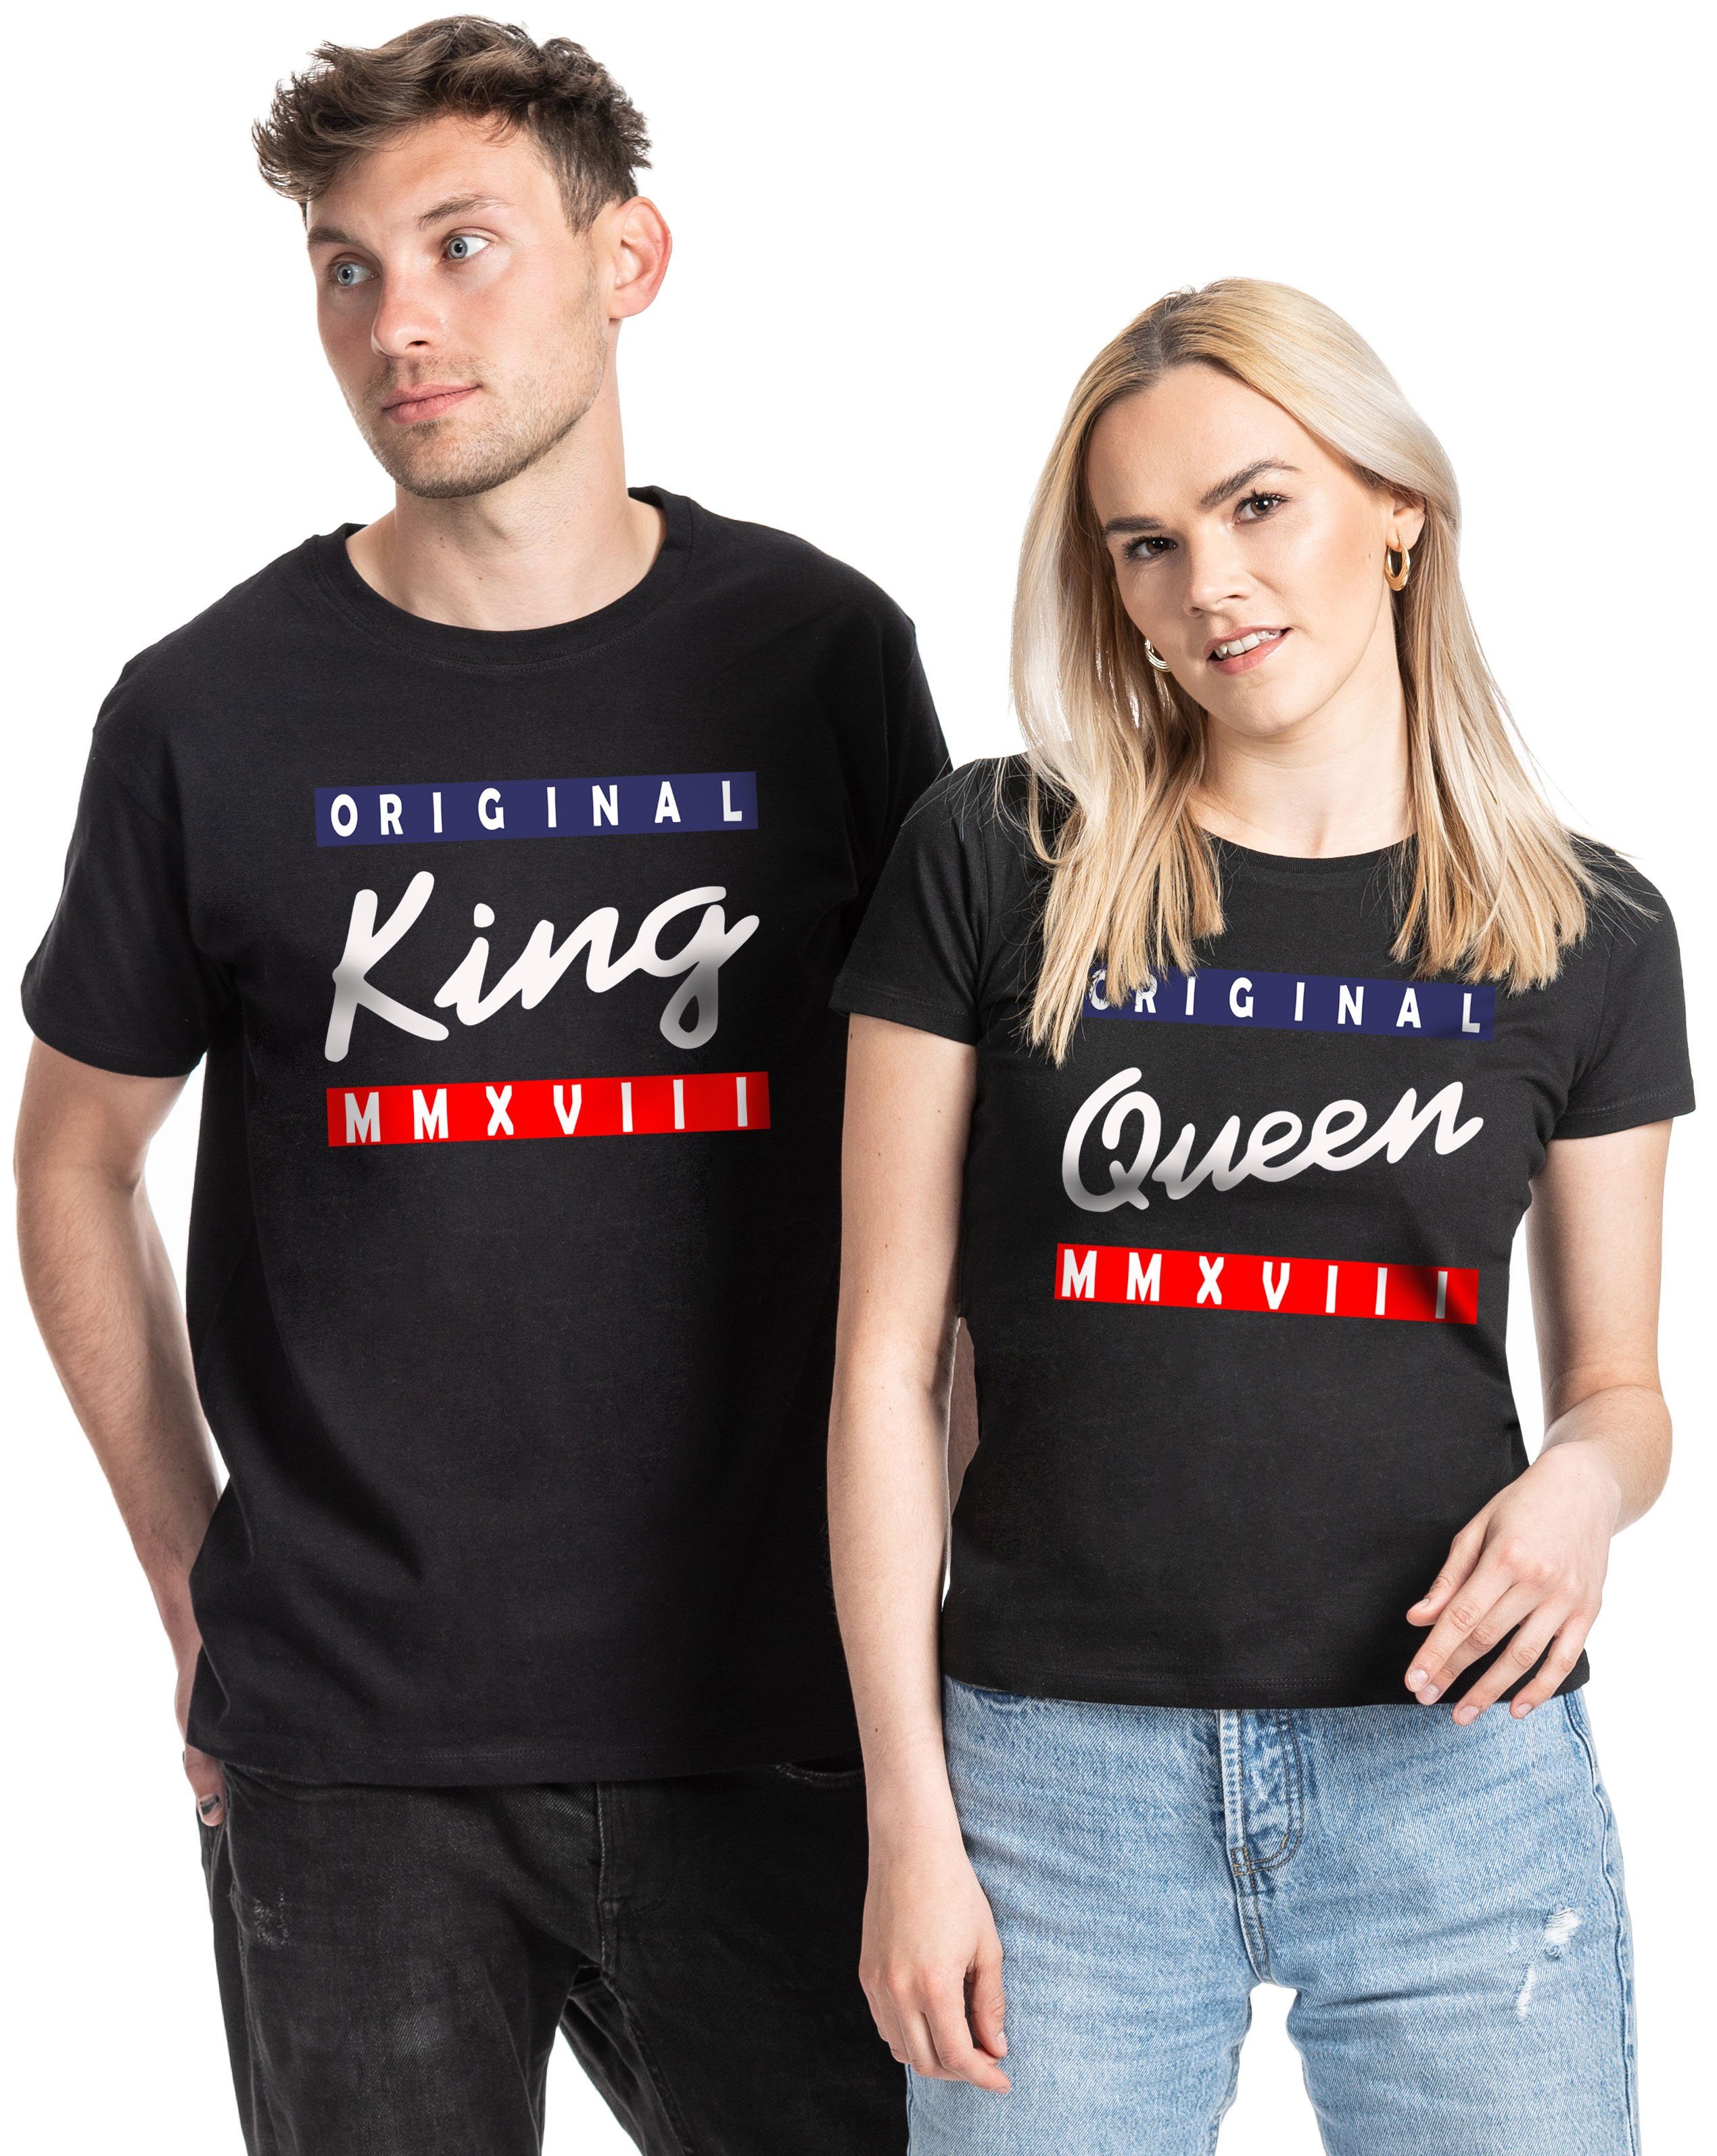 Couples Shop Print-Shirt King & Queen T-Shirt für Paare mit modischem Print, im Partner Look QUEEN / Schwarz